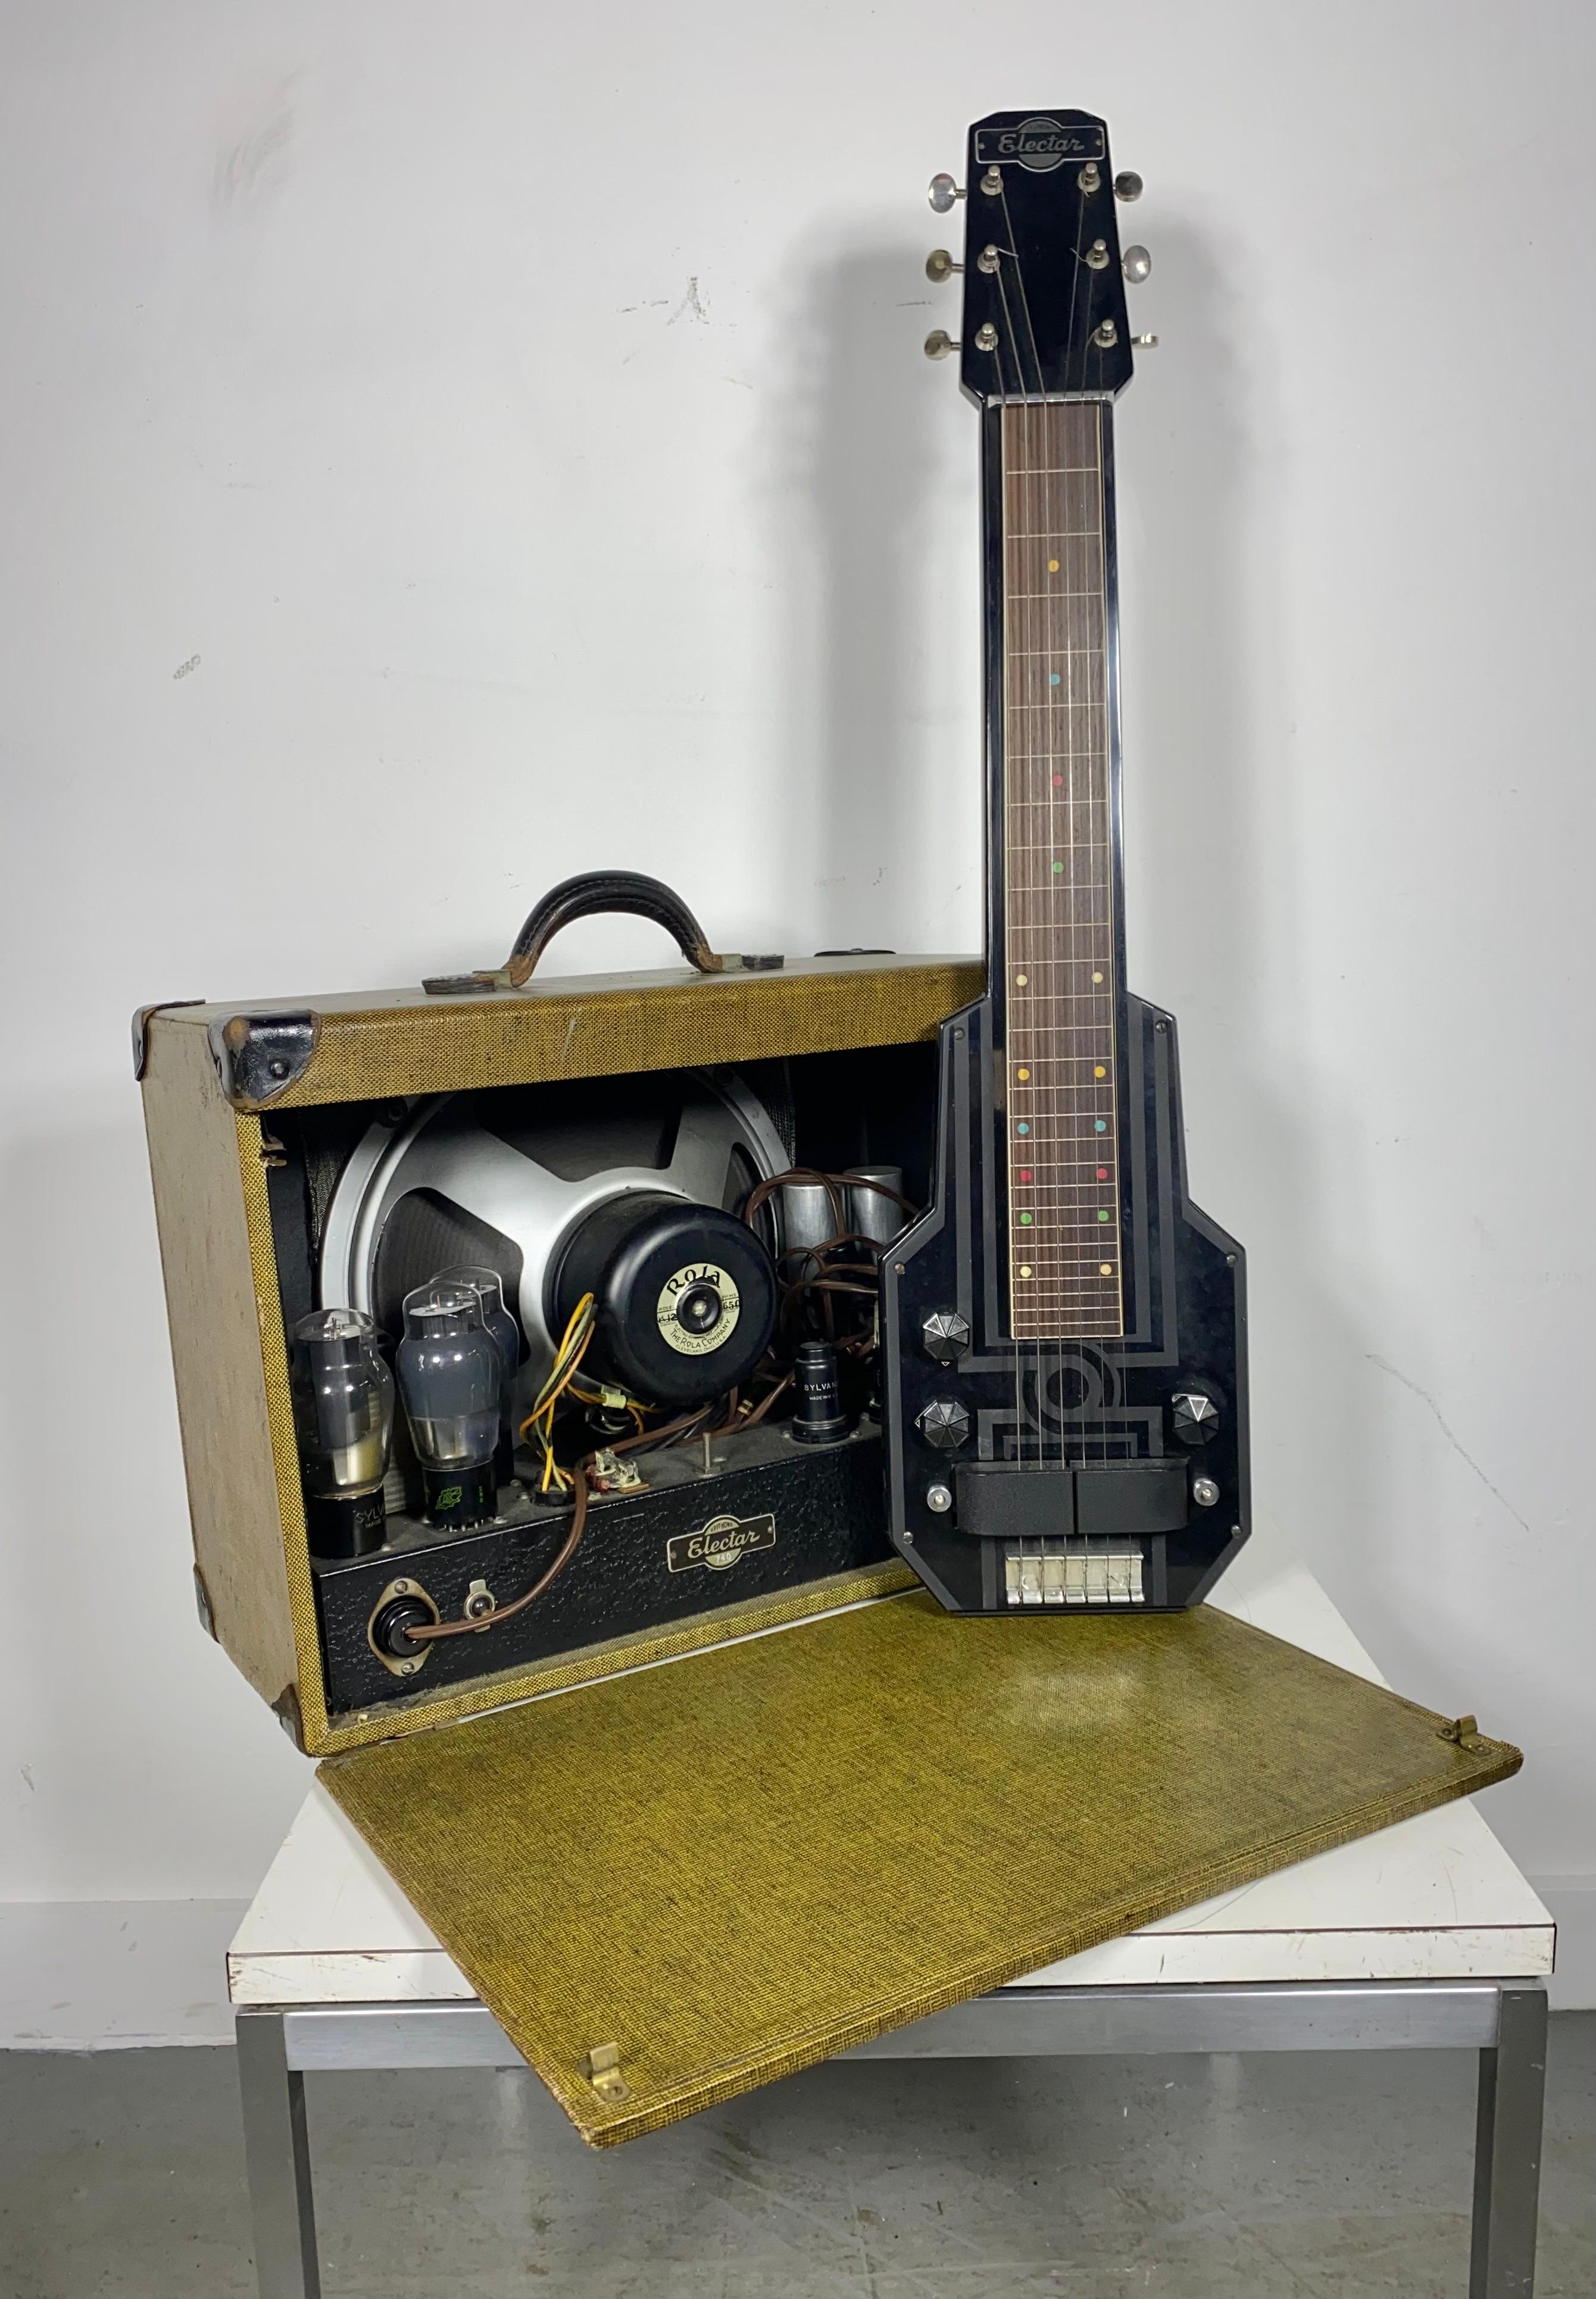 Epiphone Electar Model M Lap Steel Electric Guitar, avec amplificateur d'origine assorti...finition laquée noire, corps en érable et table en aluminium gravé. Une des premières lap steel guitar produites par Epiphone, supposée avoir été conçue par